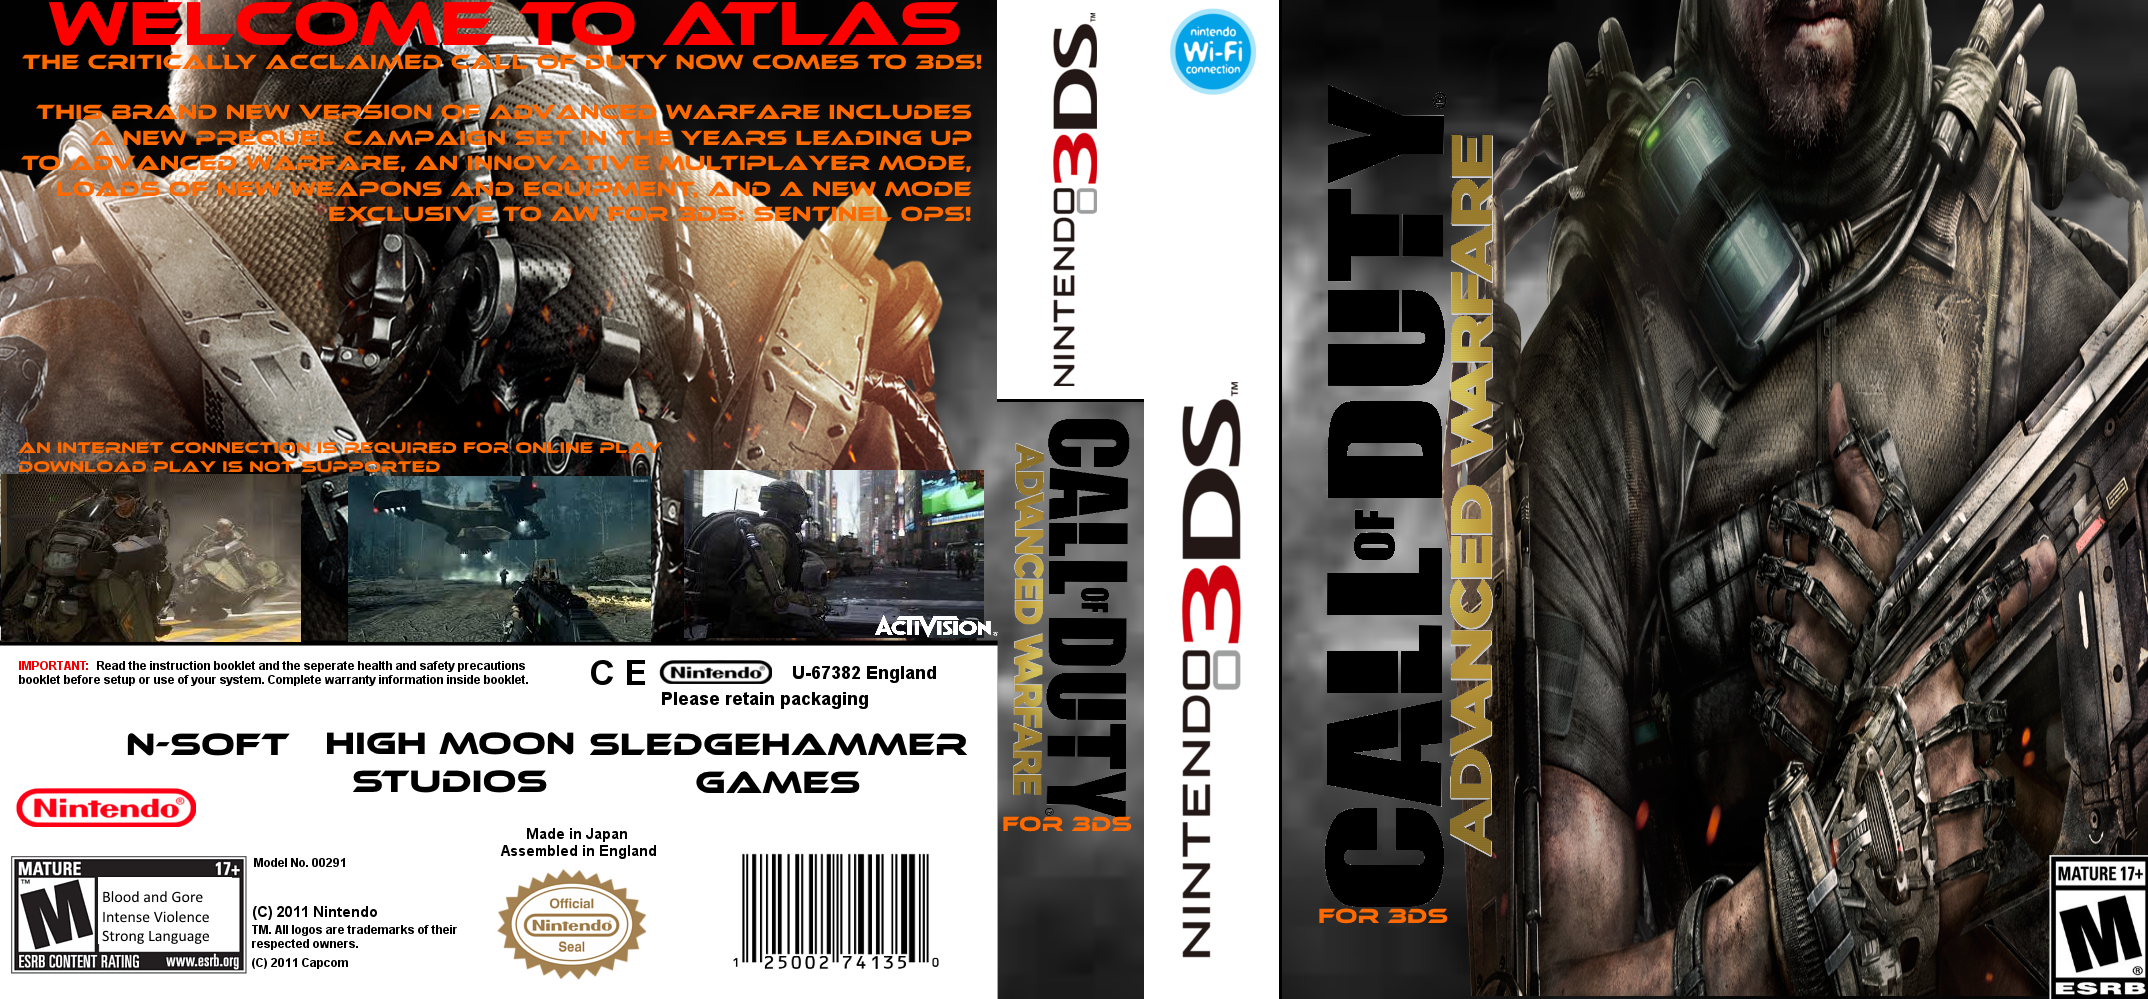 Advanced Warfare for 3DS box cover